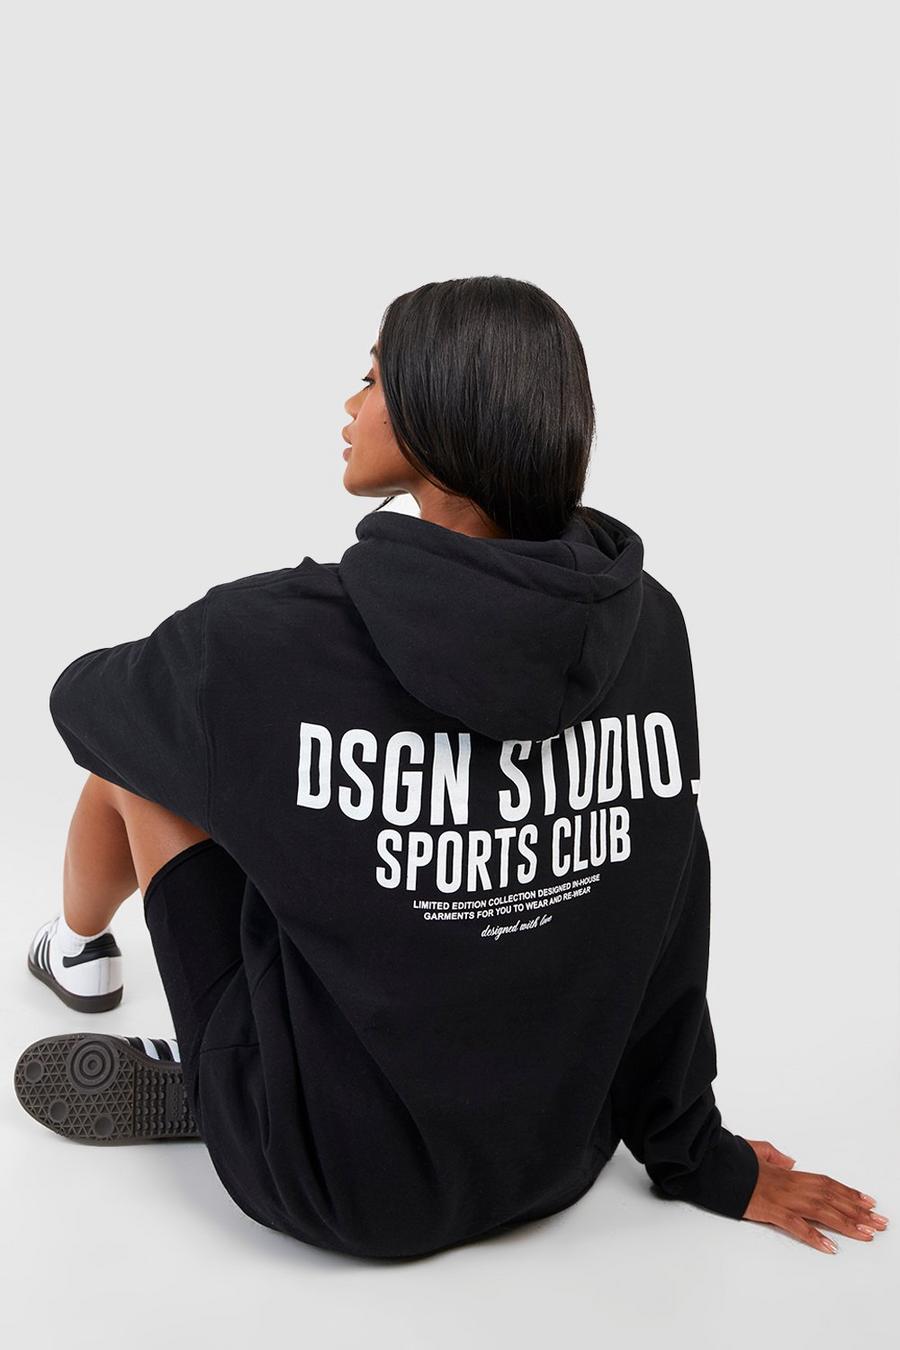 Felpa oversize con stampa di slogan Dsgn Studio Sports Club e cappuccio, Black